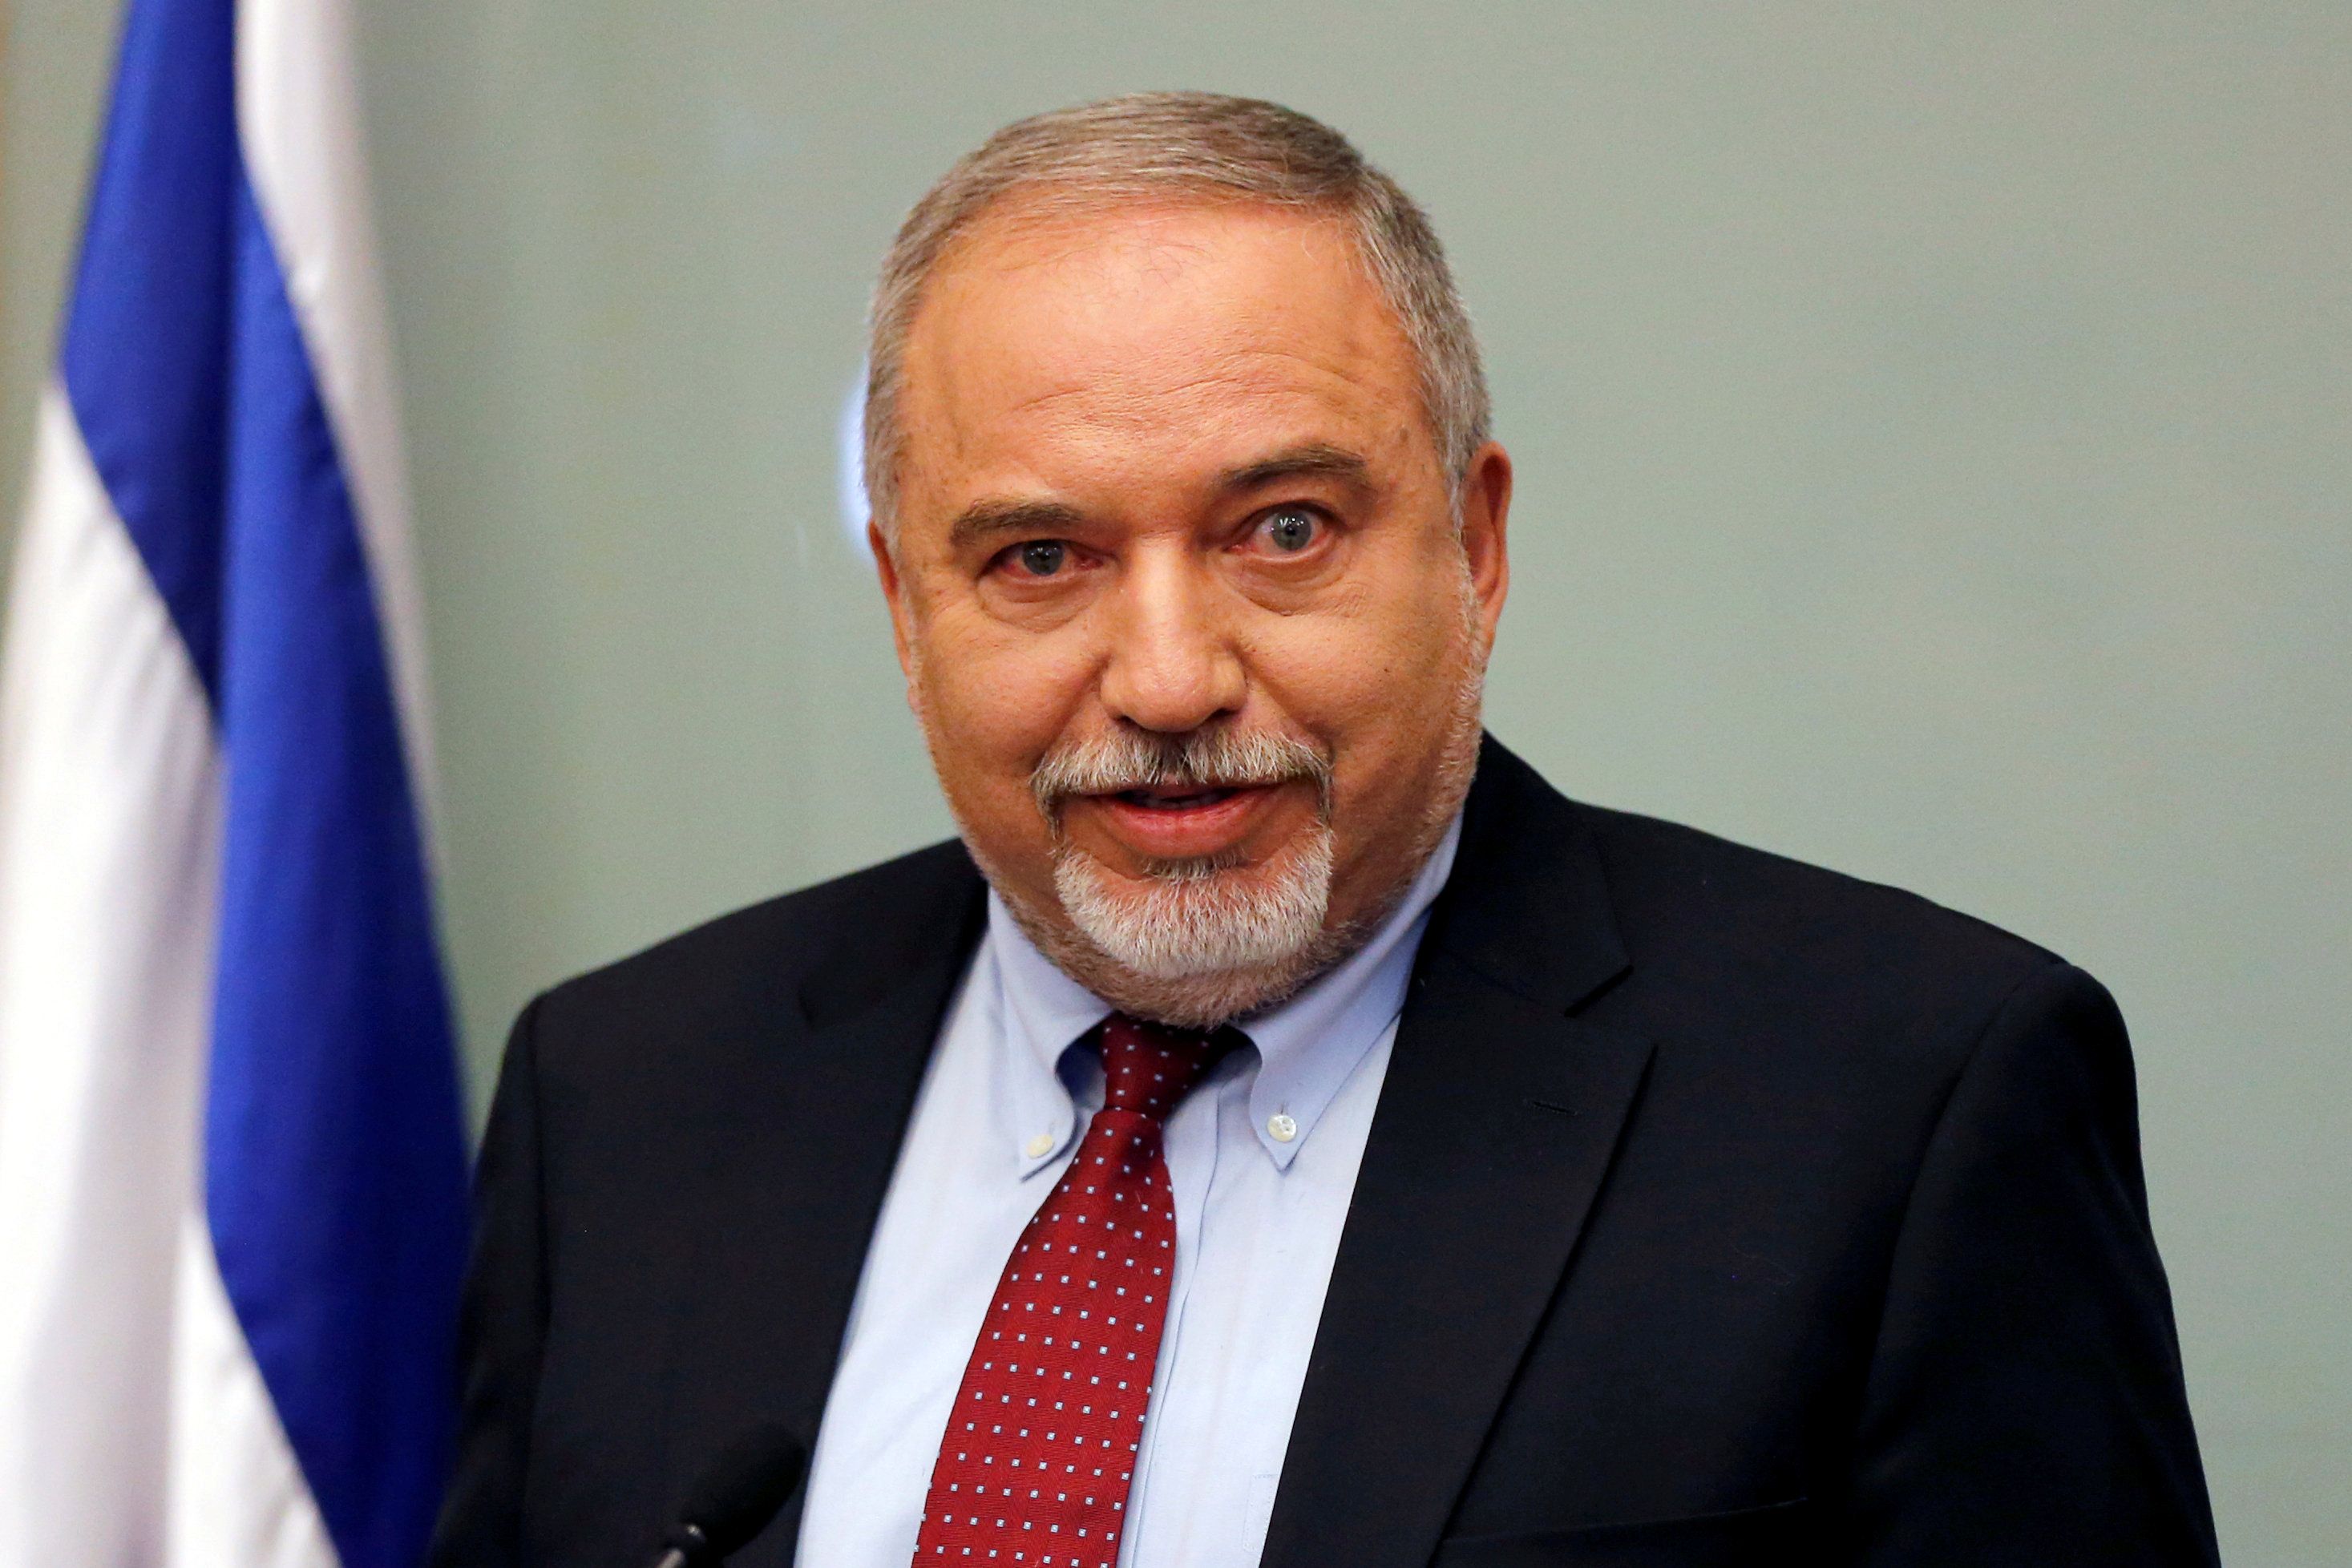 La renuncia del ministro israelí se da en una escalada de la tensión entre Israel y Gaza, la más grave desde 2014.